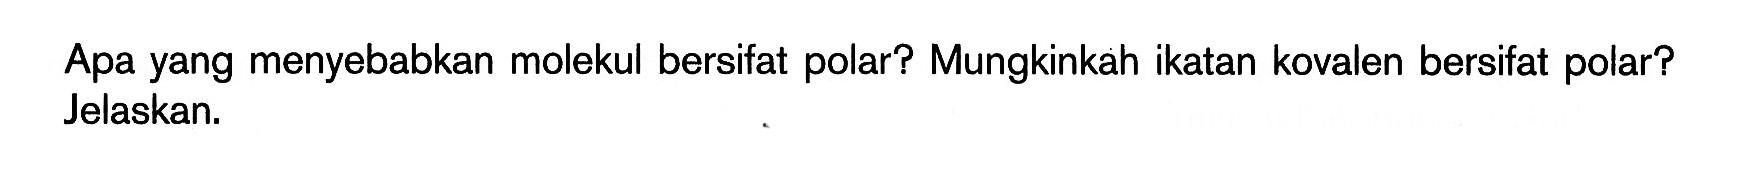 Apa yang menyebabkan molekul bersifat polar? Mungkinkah ikatan kovalen bersifat polar? Jelaskan.